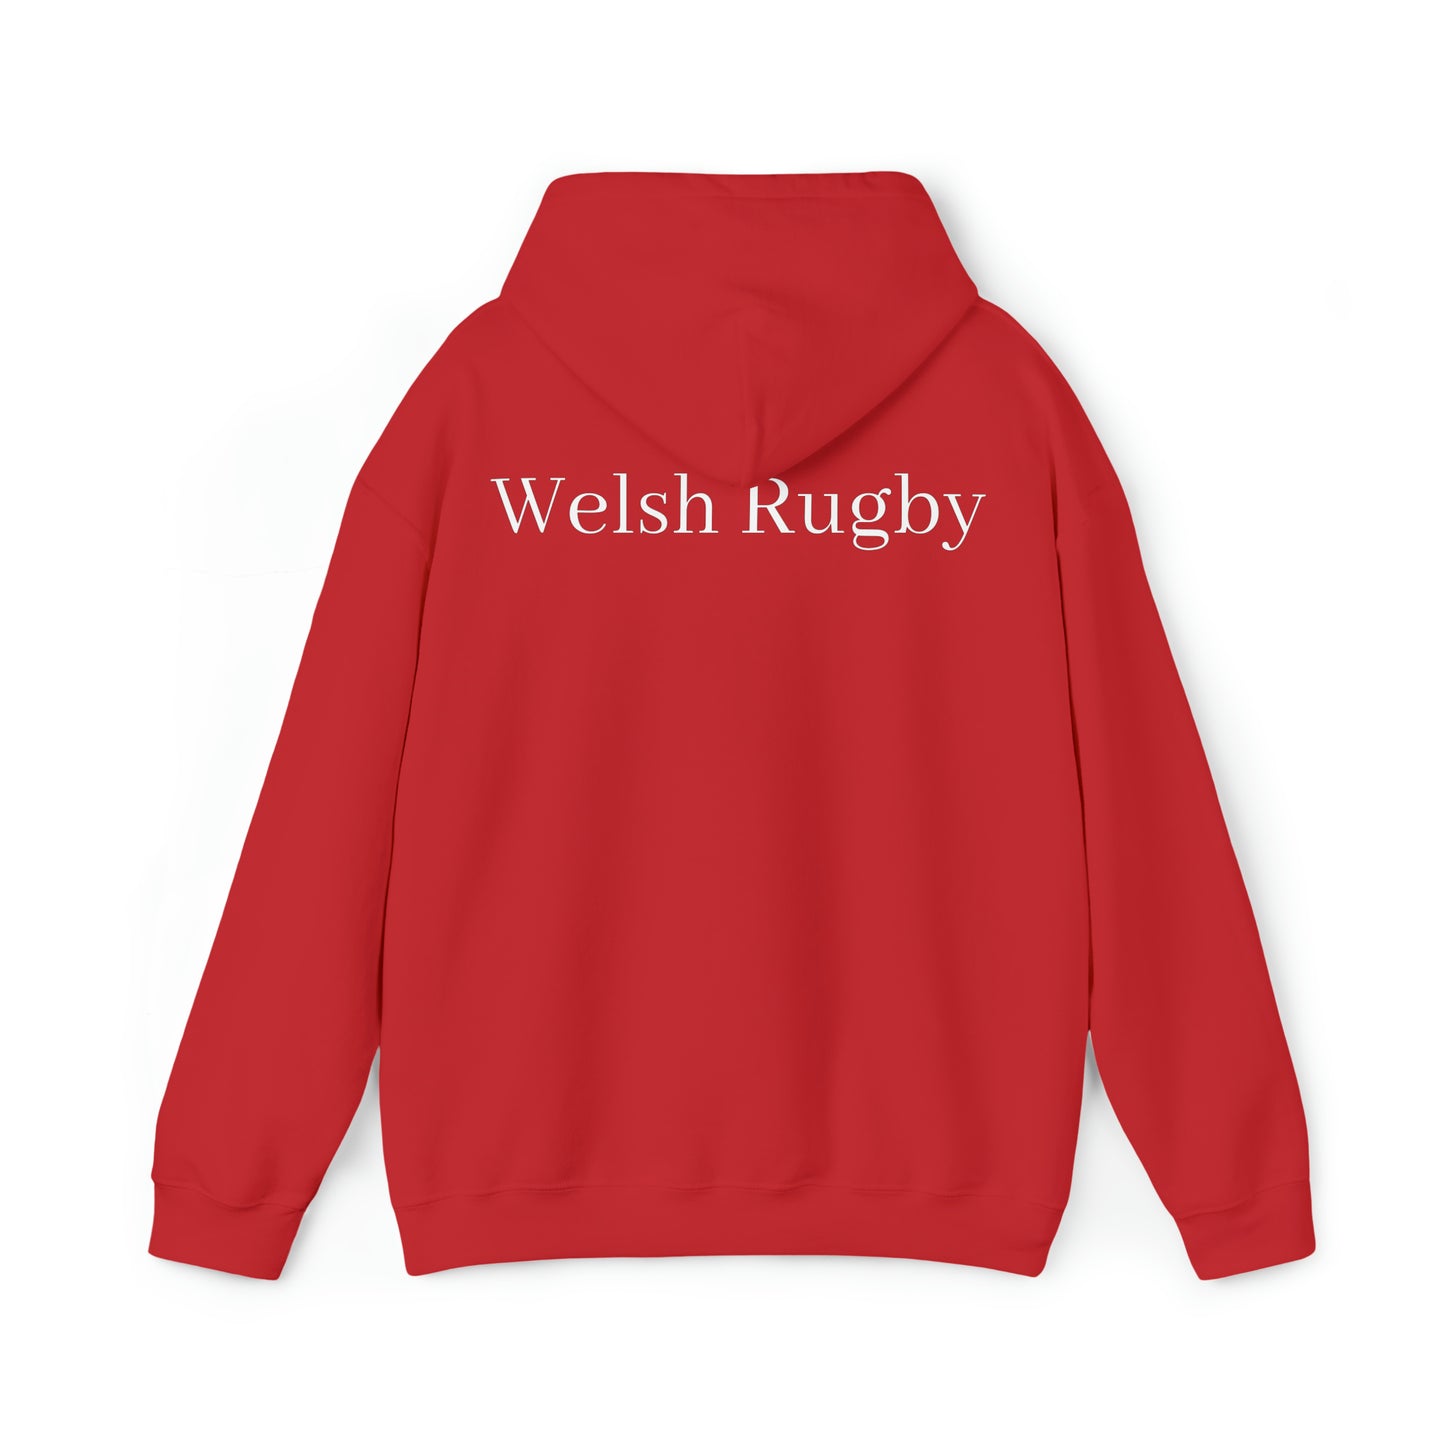 Ready Wales - dark hoodies